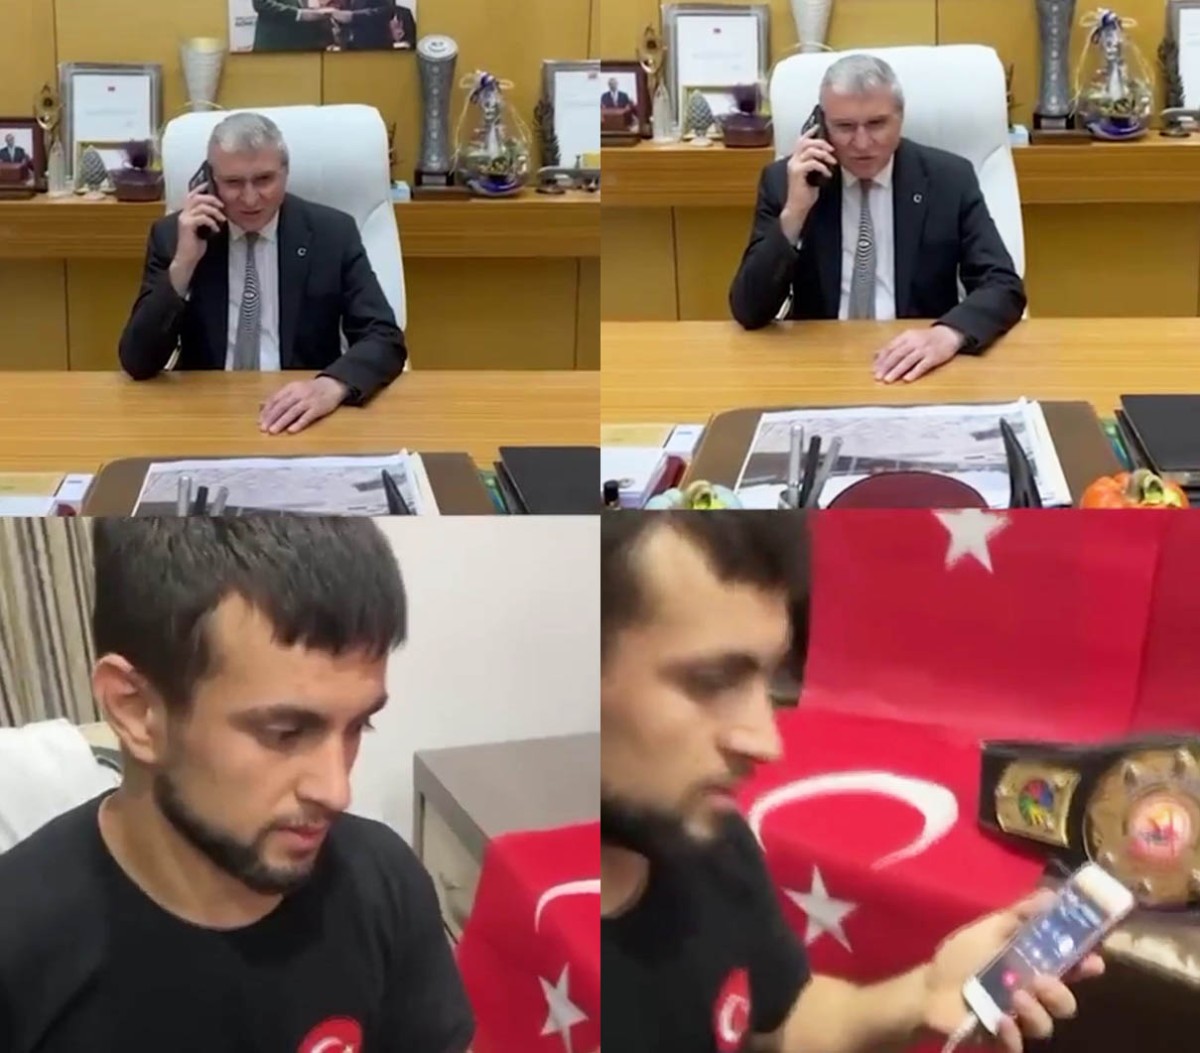 Dünyayı dize getiren Mükremin’e ilk telefon Yüce’den: “Türkiye seninle gurur duyuyor”